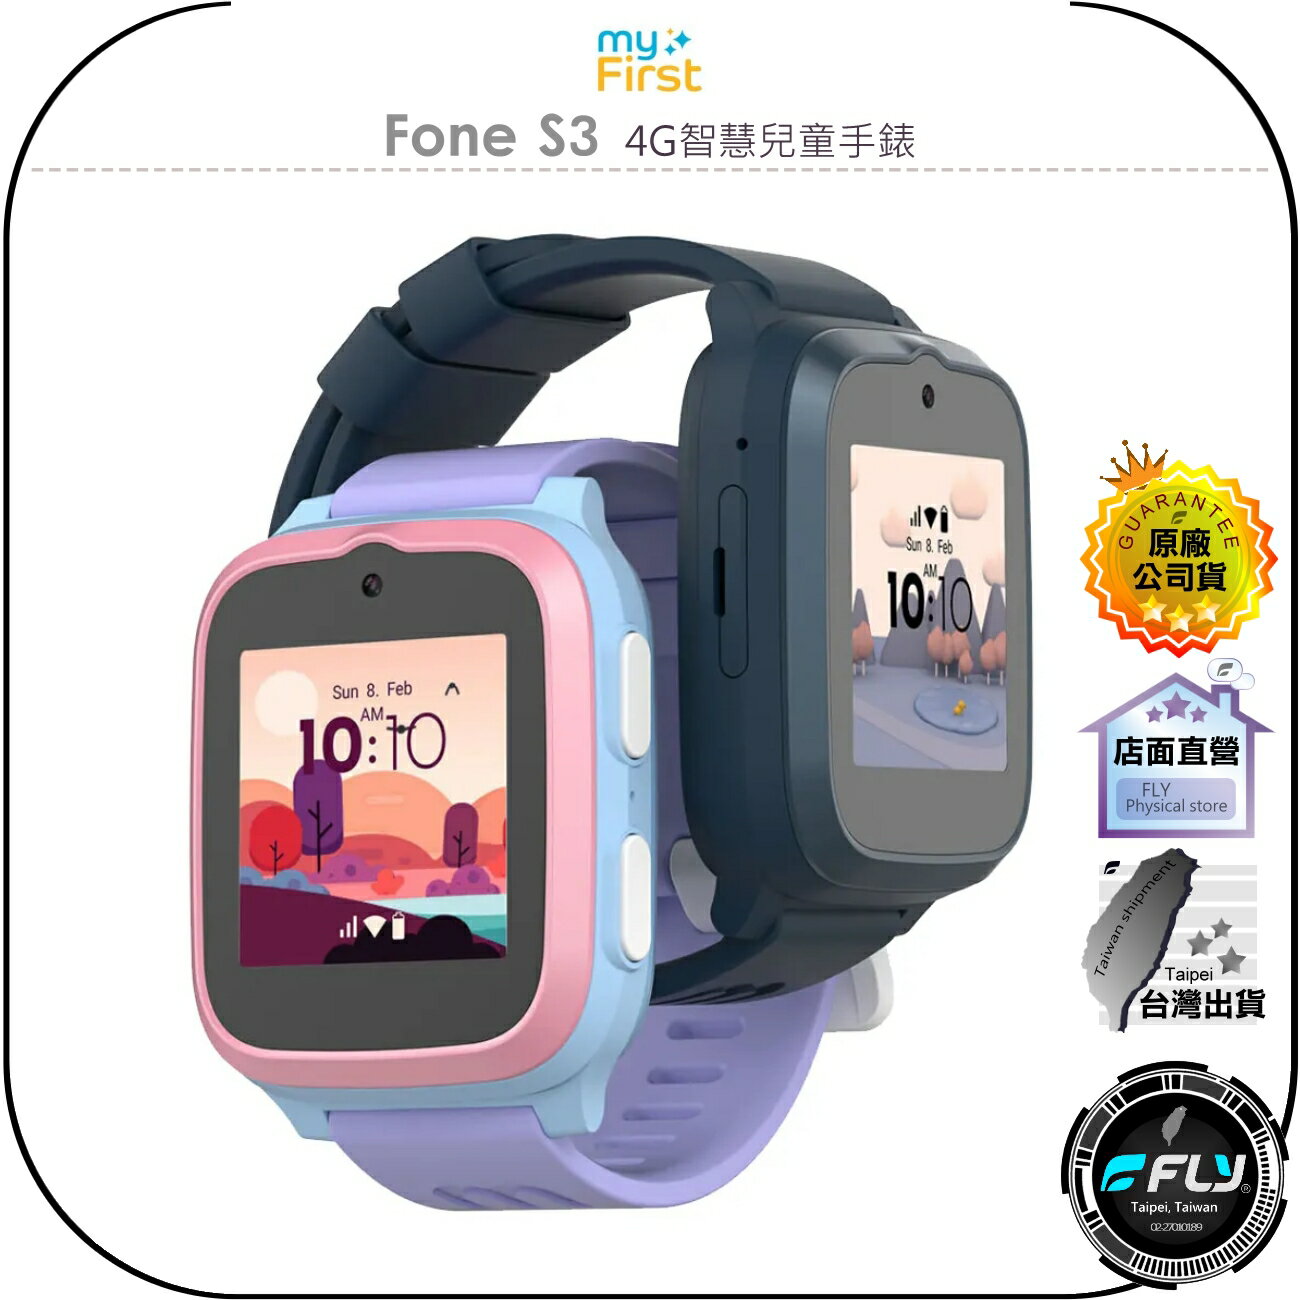 【飛翔商城】myFirst Fone S3 4G智慧兒童手錶◉公司貨◉四核處理◉方形螢幕◉心率偵測◉頂級防水◉即時通話